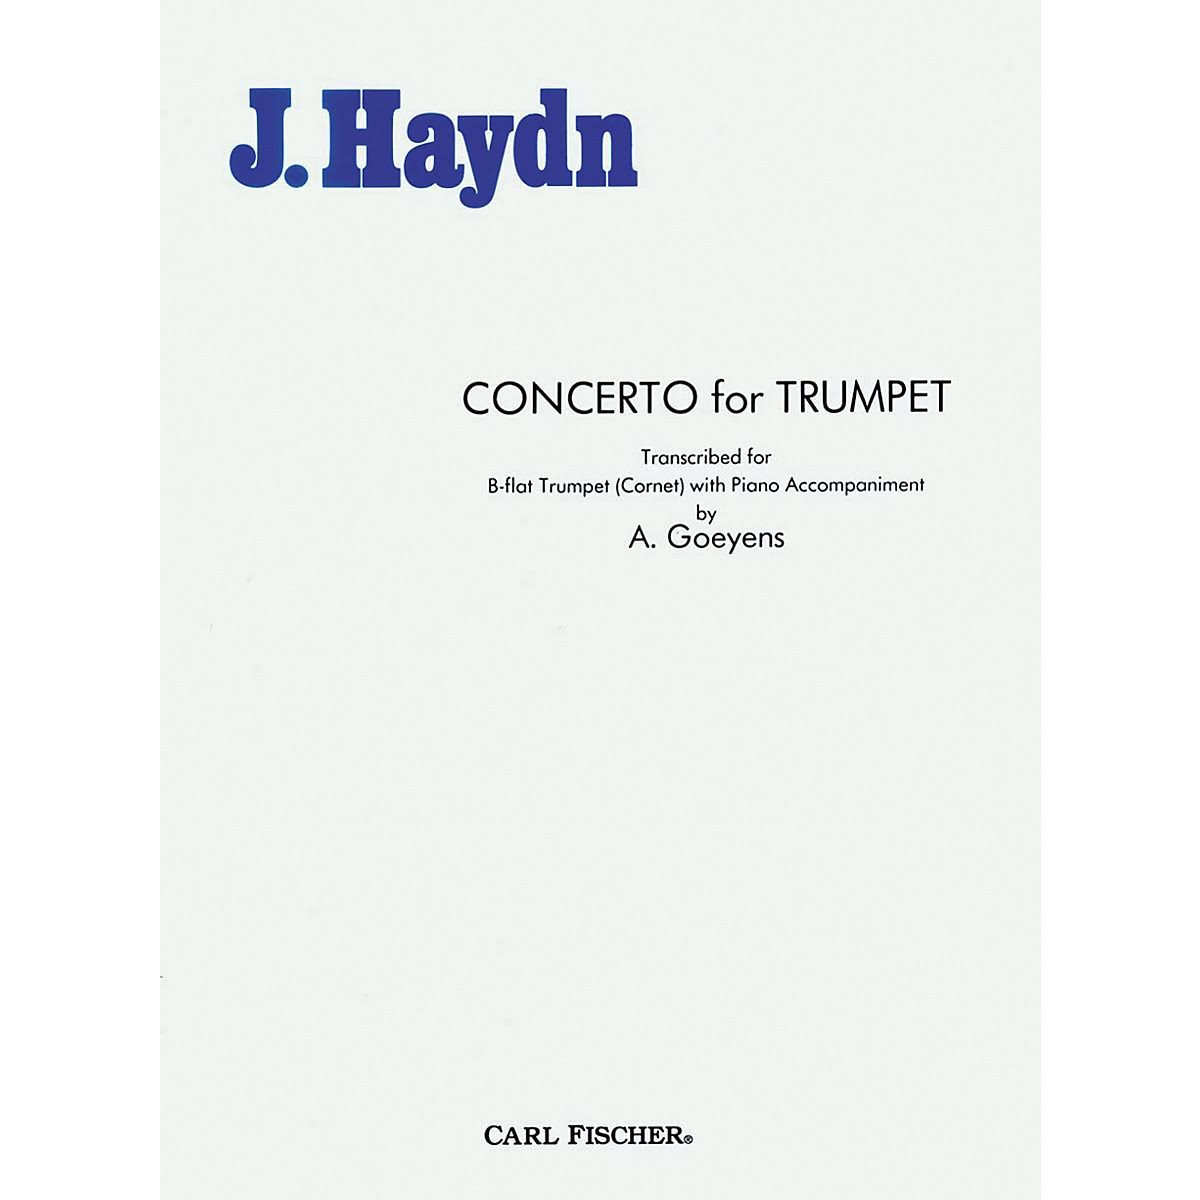 Carl Fischer Concerto for Trumpet - J. Hayden